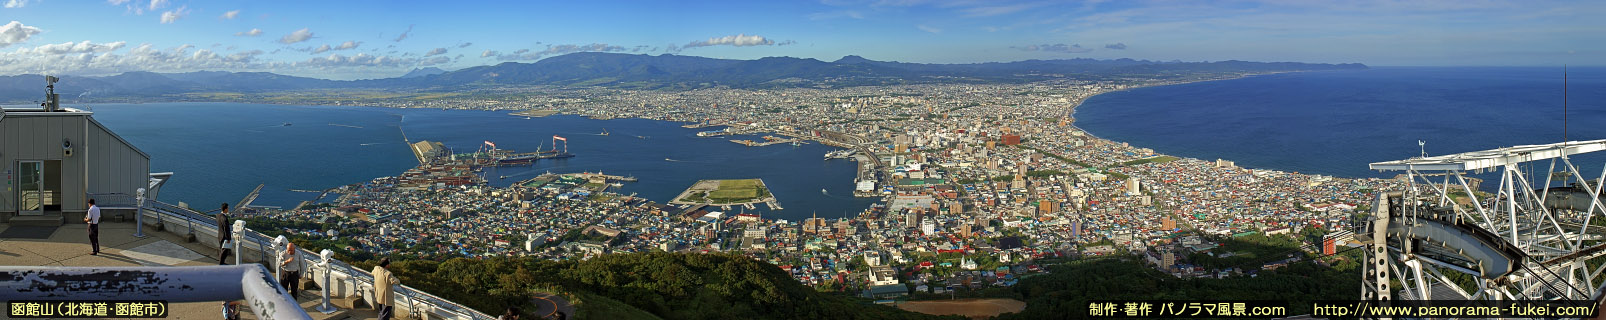 函館山 山頂展望台からのパノラマ風景写真